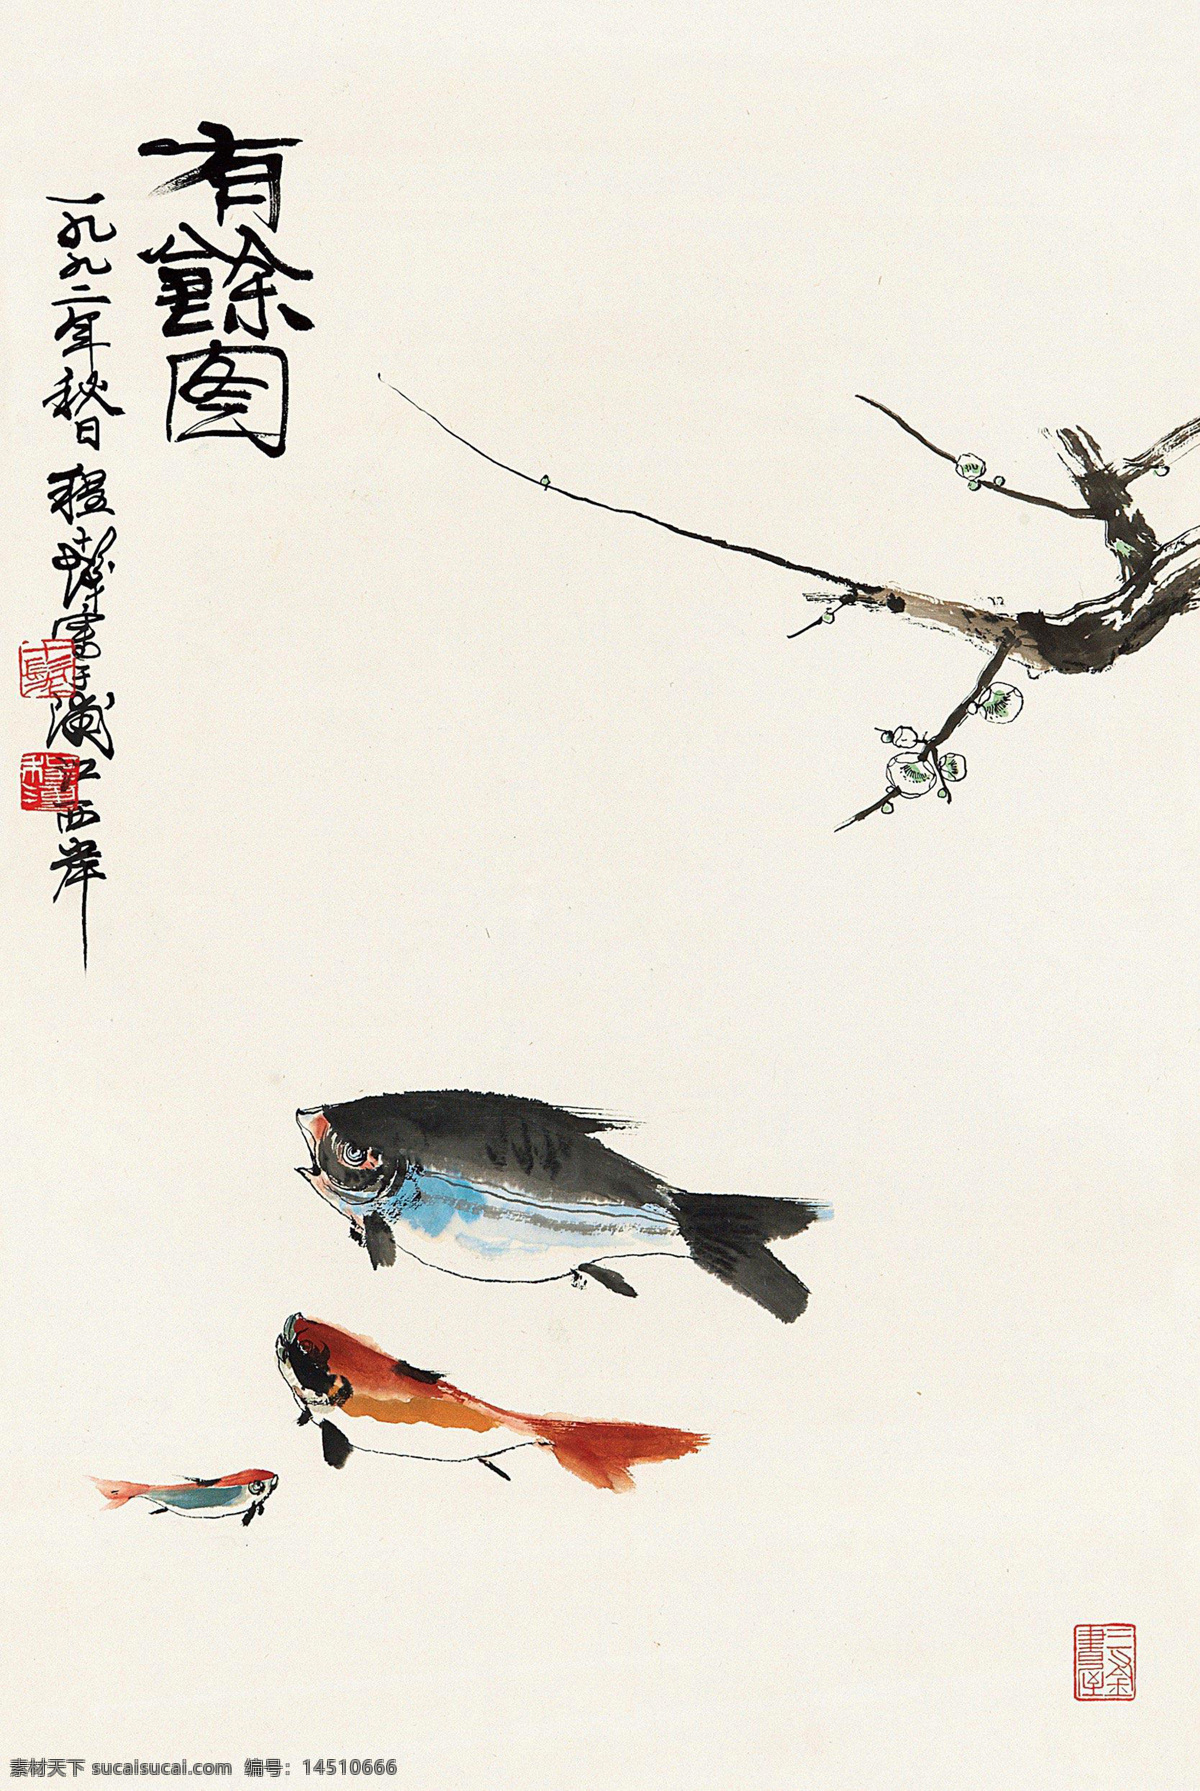 国画 绘画书法 梅花 年年有余 双鱼 水墨画 文化艺术 有余 图 设计素材 模板下载 有余图 程十发 鱼类 写意 中国画